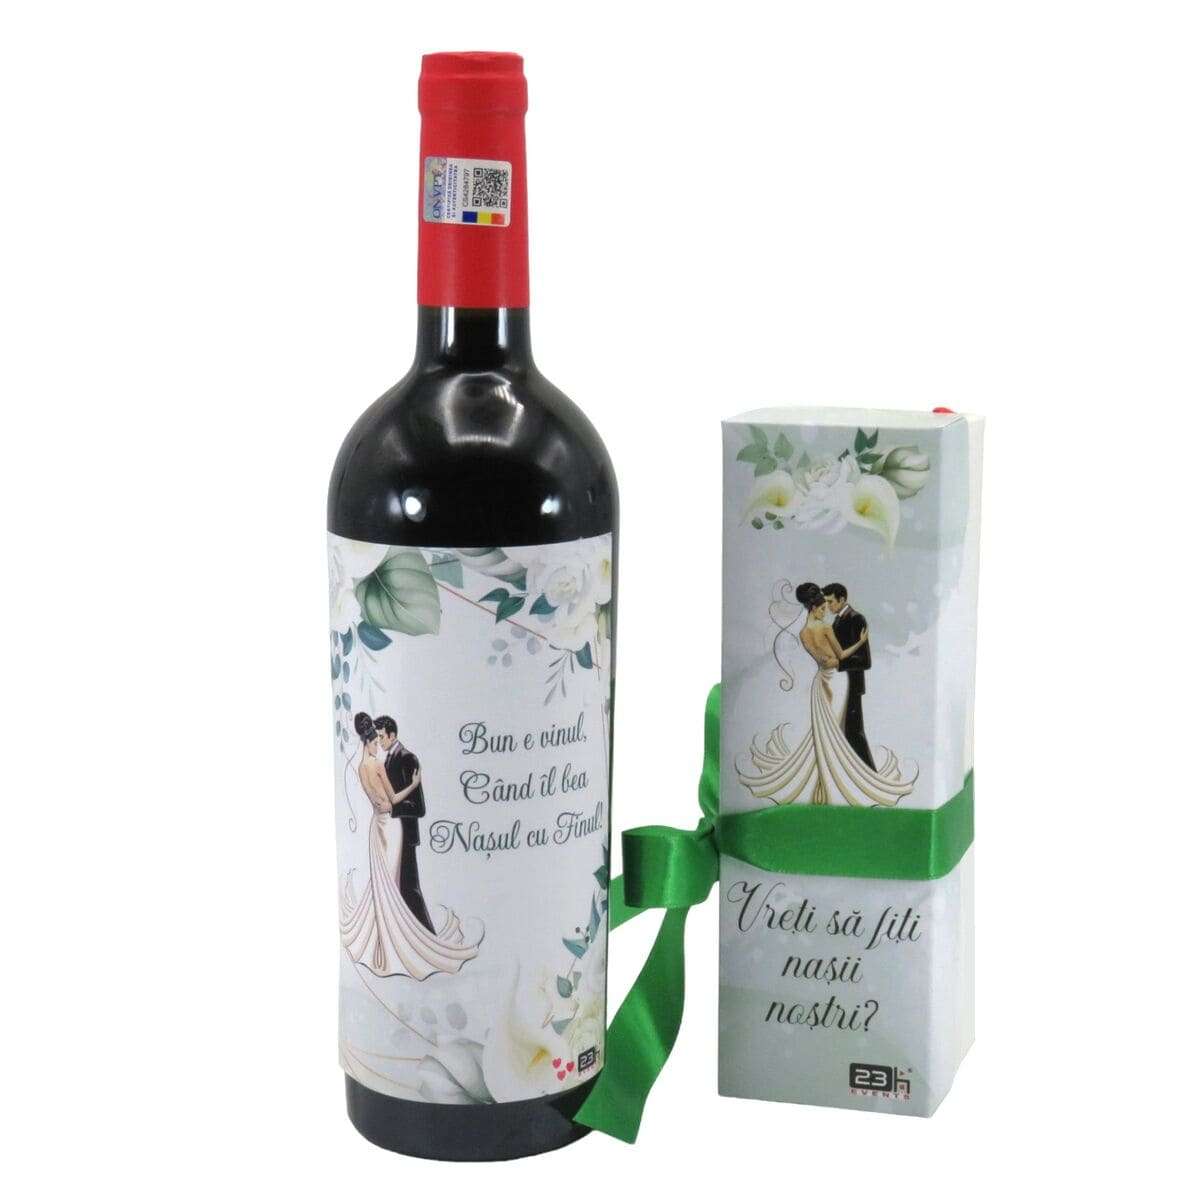 Cadou Cerere Nasi Cununie sticla vin personalizata & cutiuta cadou ILIF402009 (5)